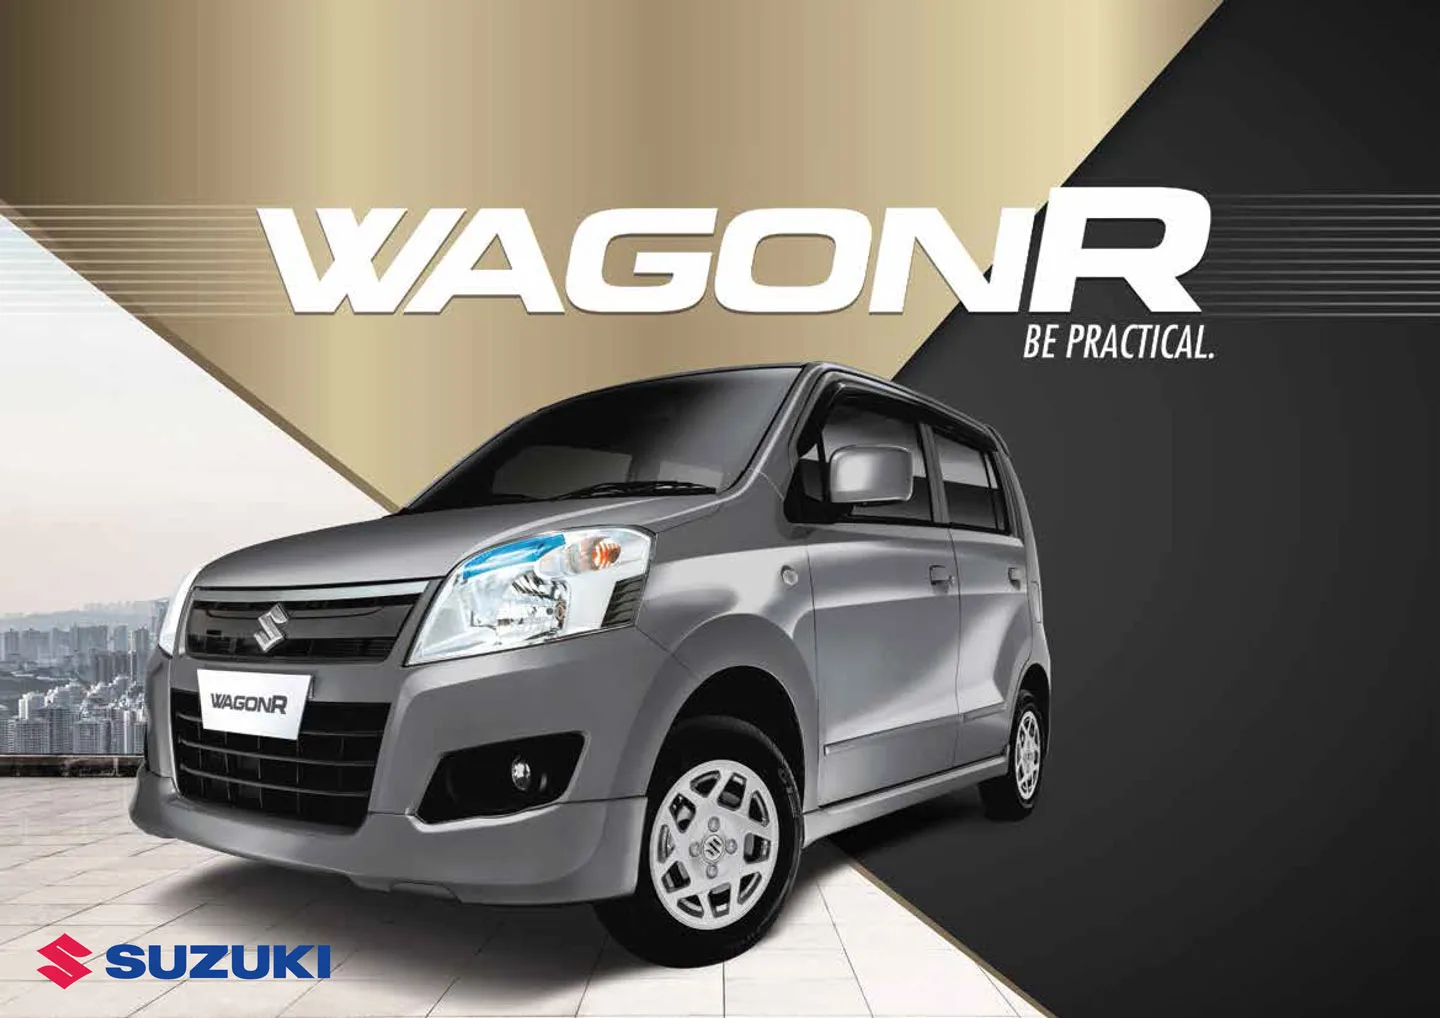 Suzuki Wagon R Fuel Average in Pakistan